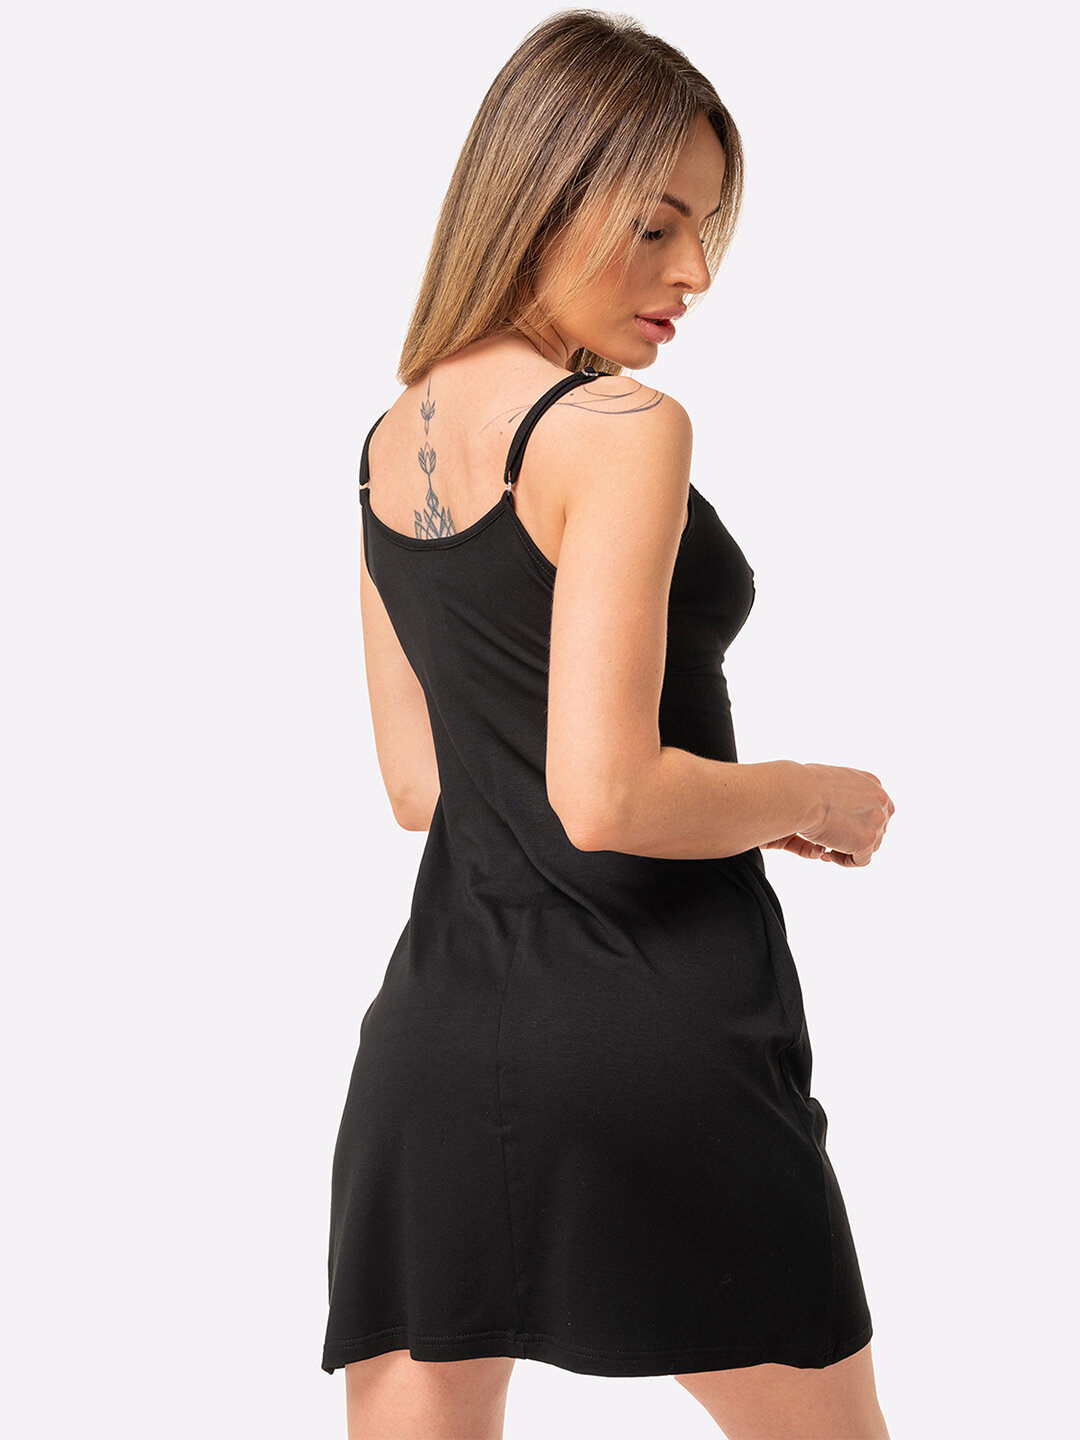 Сорочка женская ночная с кружевом ночнушка женская вискоза HappyFox, HFG024 размер 50, цвет черный - фотография № 4